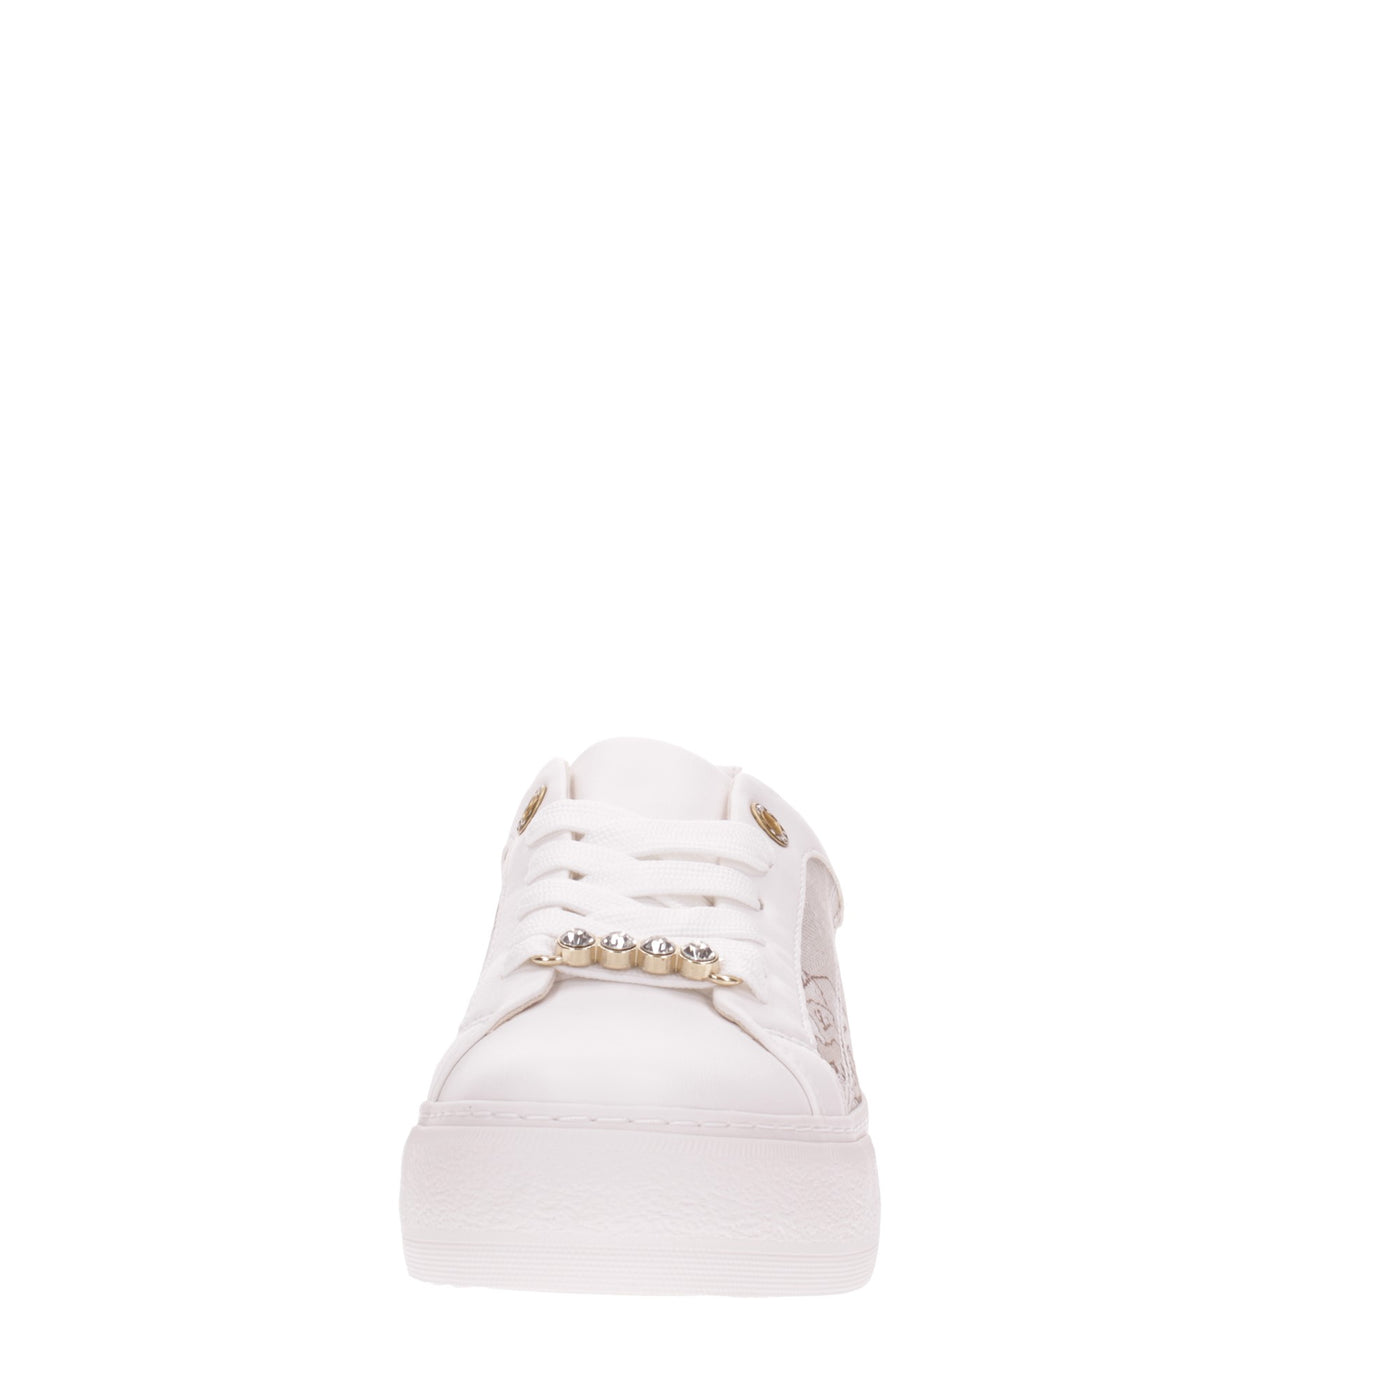 Alviero martini Sneakers#colore_bianco